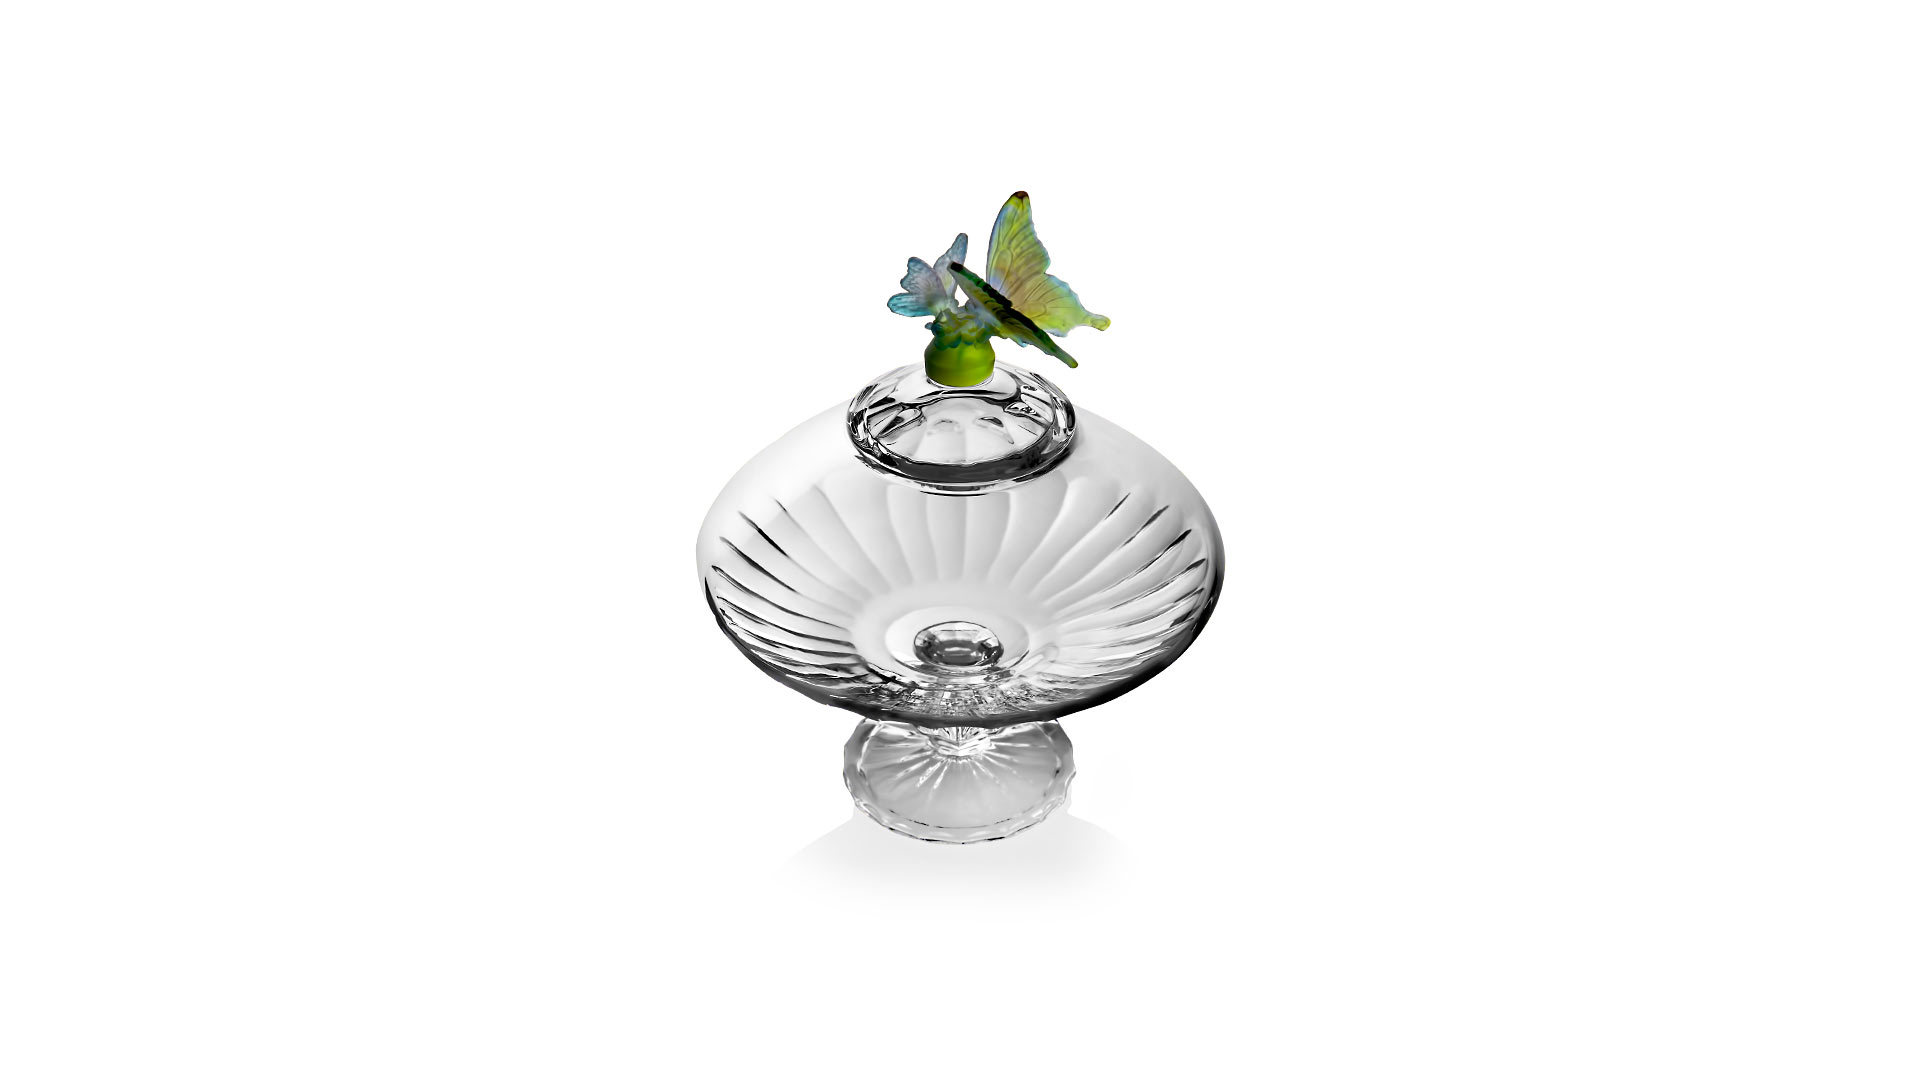 Конфетница с крышкой Cristal de Paris Трианон 25см, зеленая